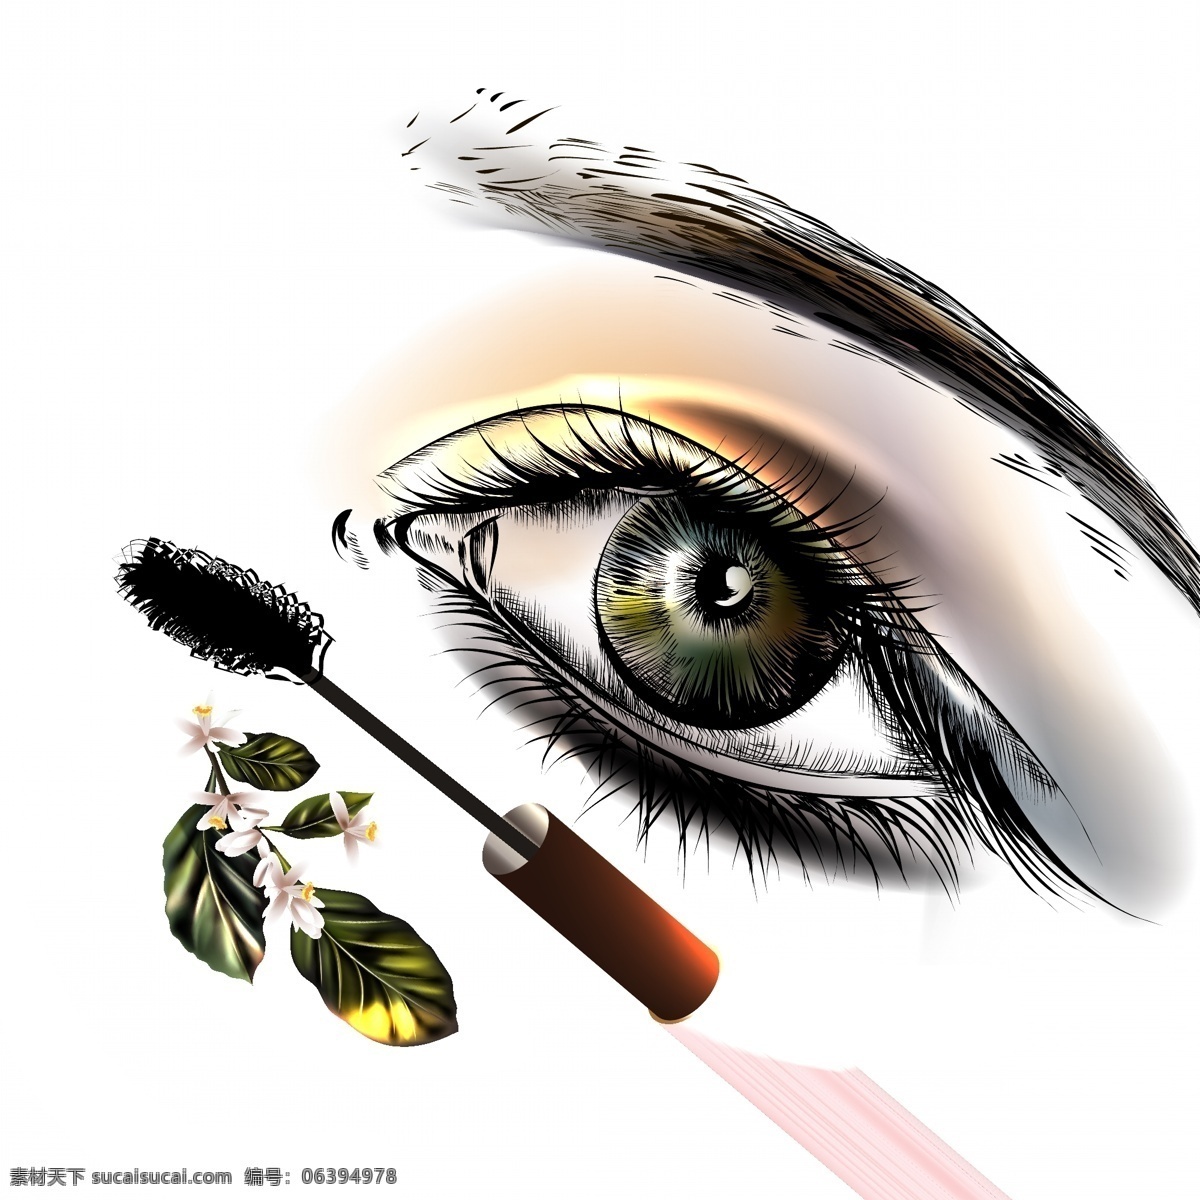 水彩 手绘 女人 化妆 后 眼睛 矢量 化妆品 人物 卡通 插画 睫毛膏 眉笔